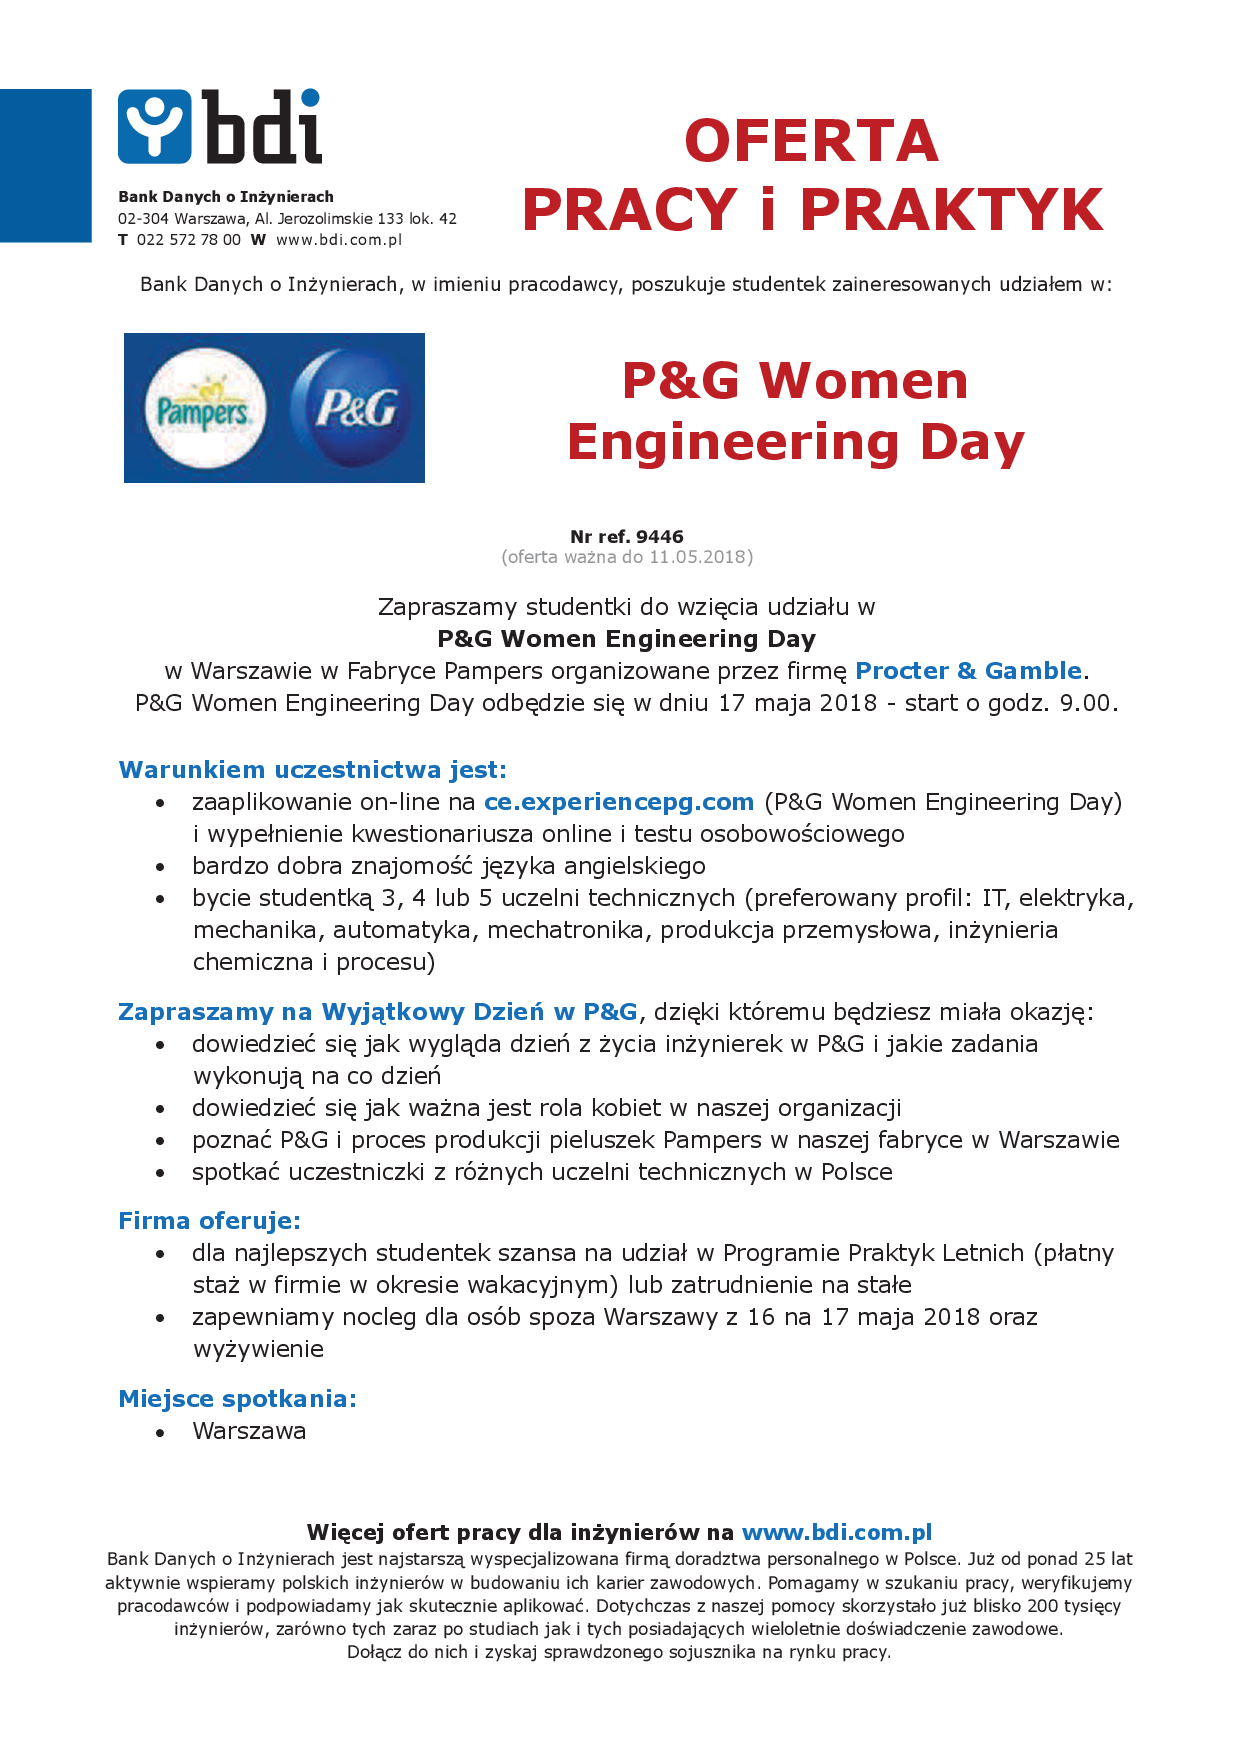 P&G Women Engineering Day